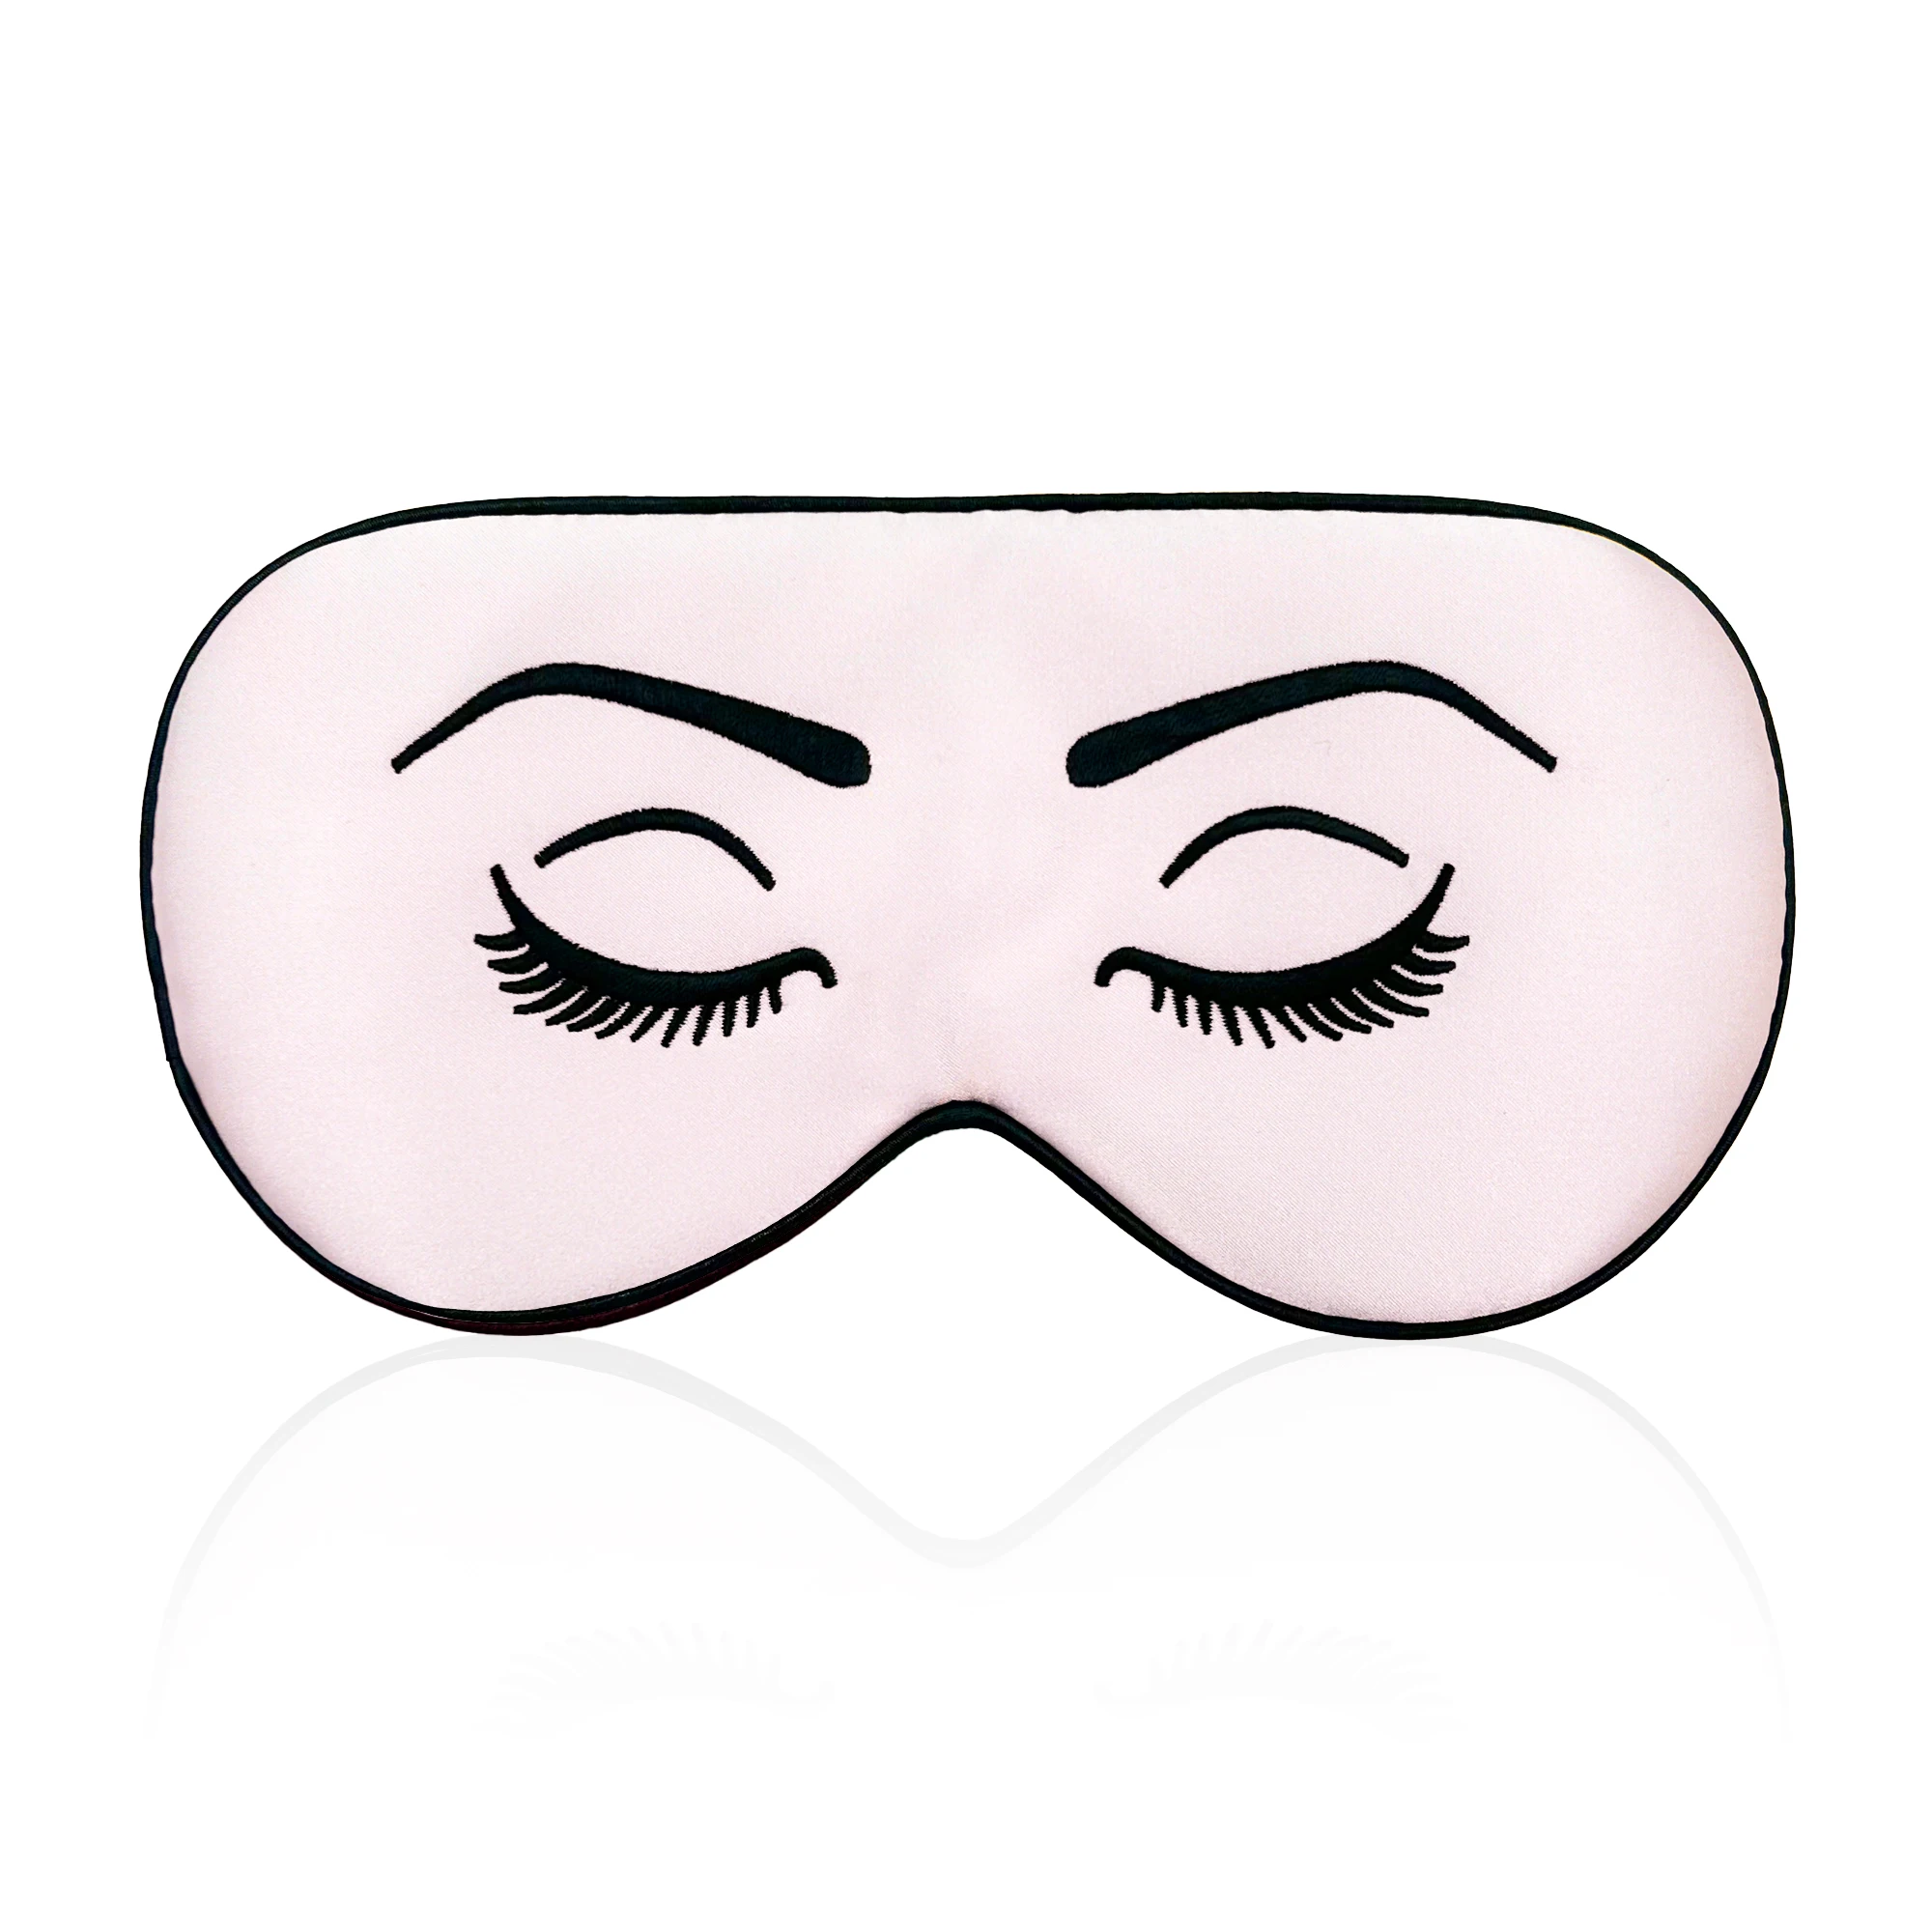 Mulberry Silk Sleep Mask para Dormir, 100% Natural, Seda Pura, Cobertura de Olho, Viagem Relaxar, mundialmente famosos paitings